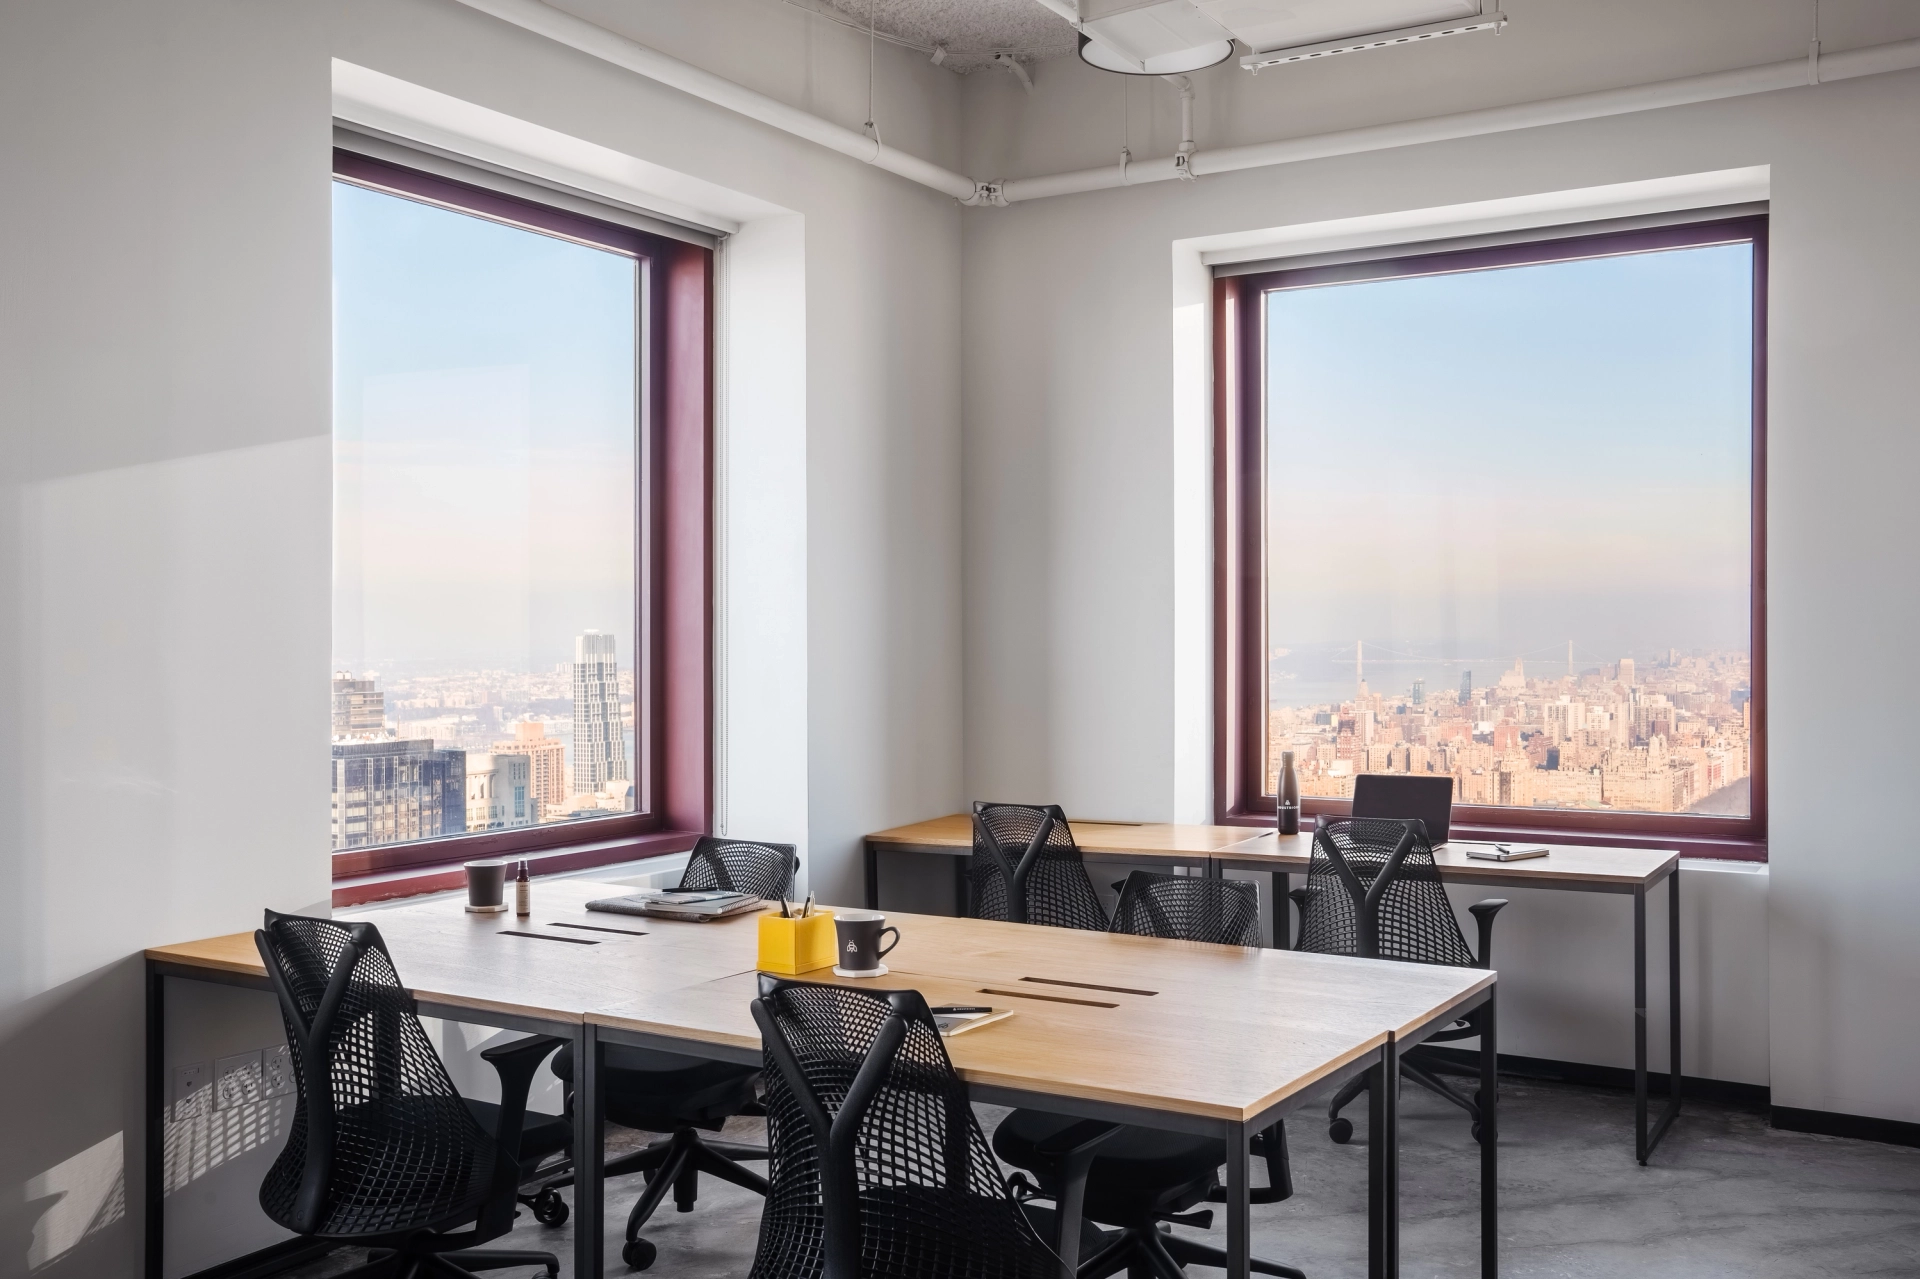 Un bureau de coworking avec de grandes fenêtres donnant sur New York.